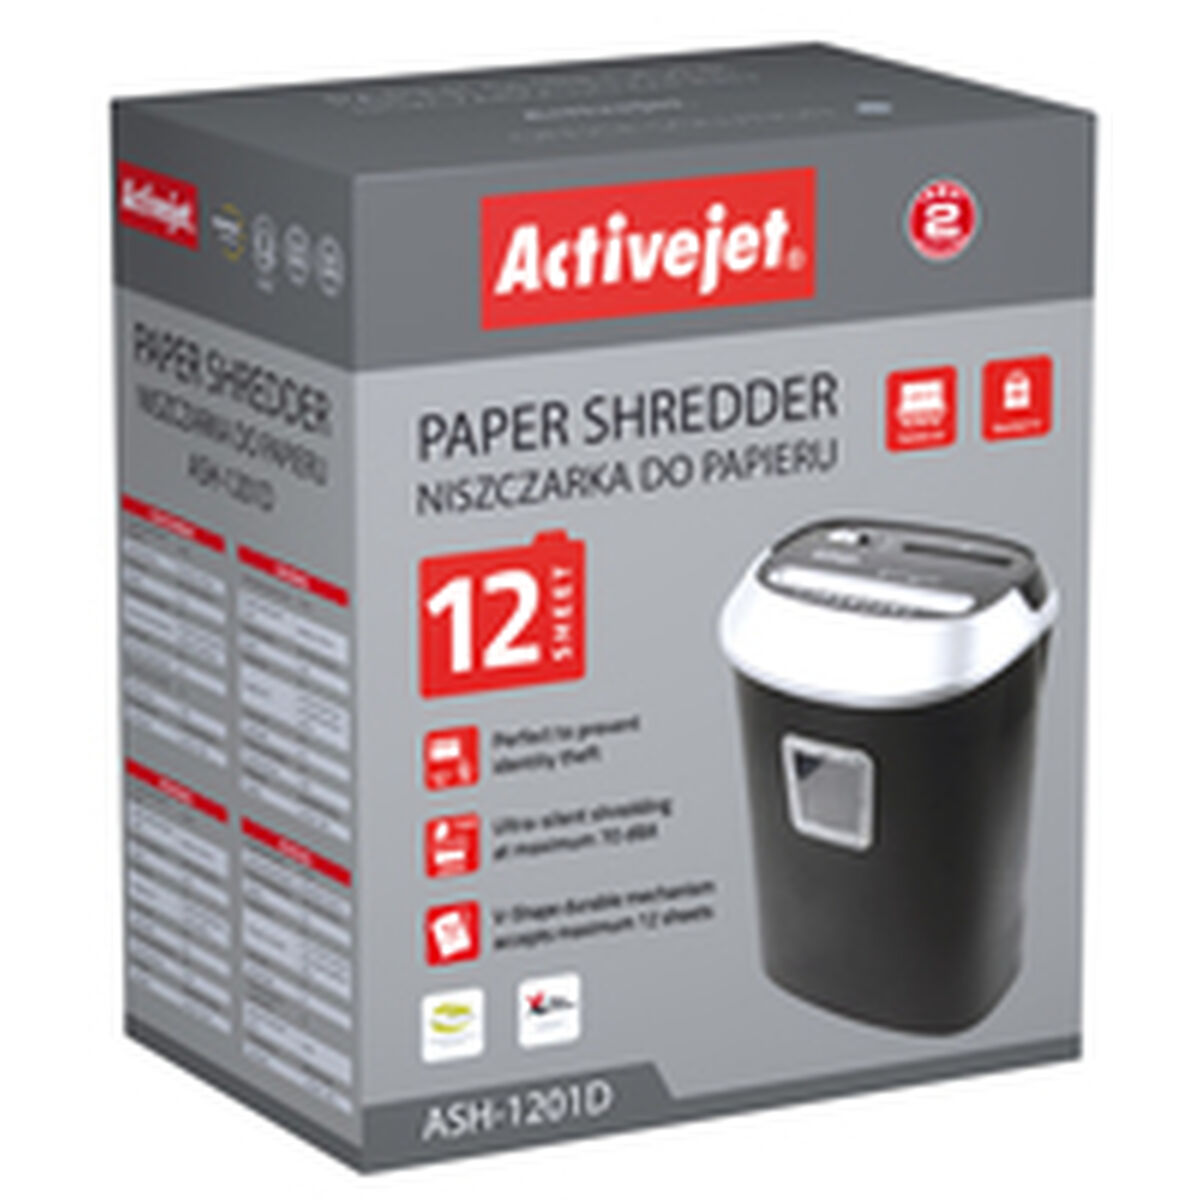 Шредер для бумаги Activejet ASH-1201D